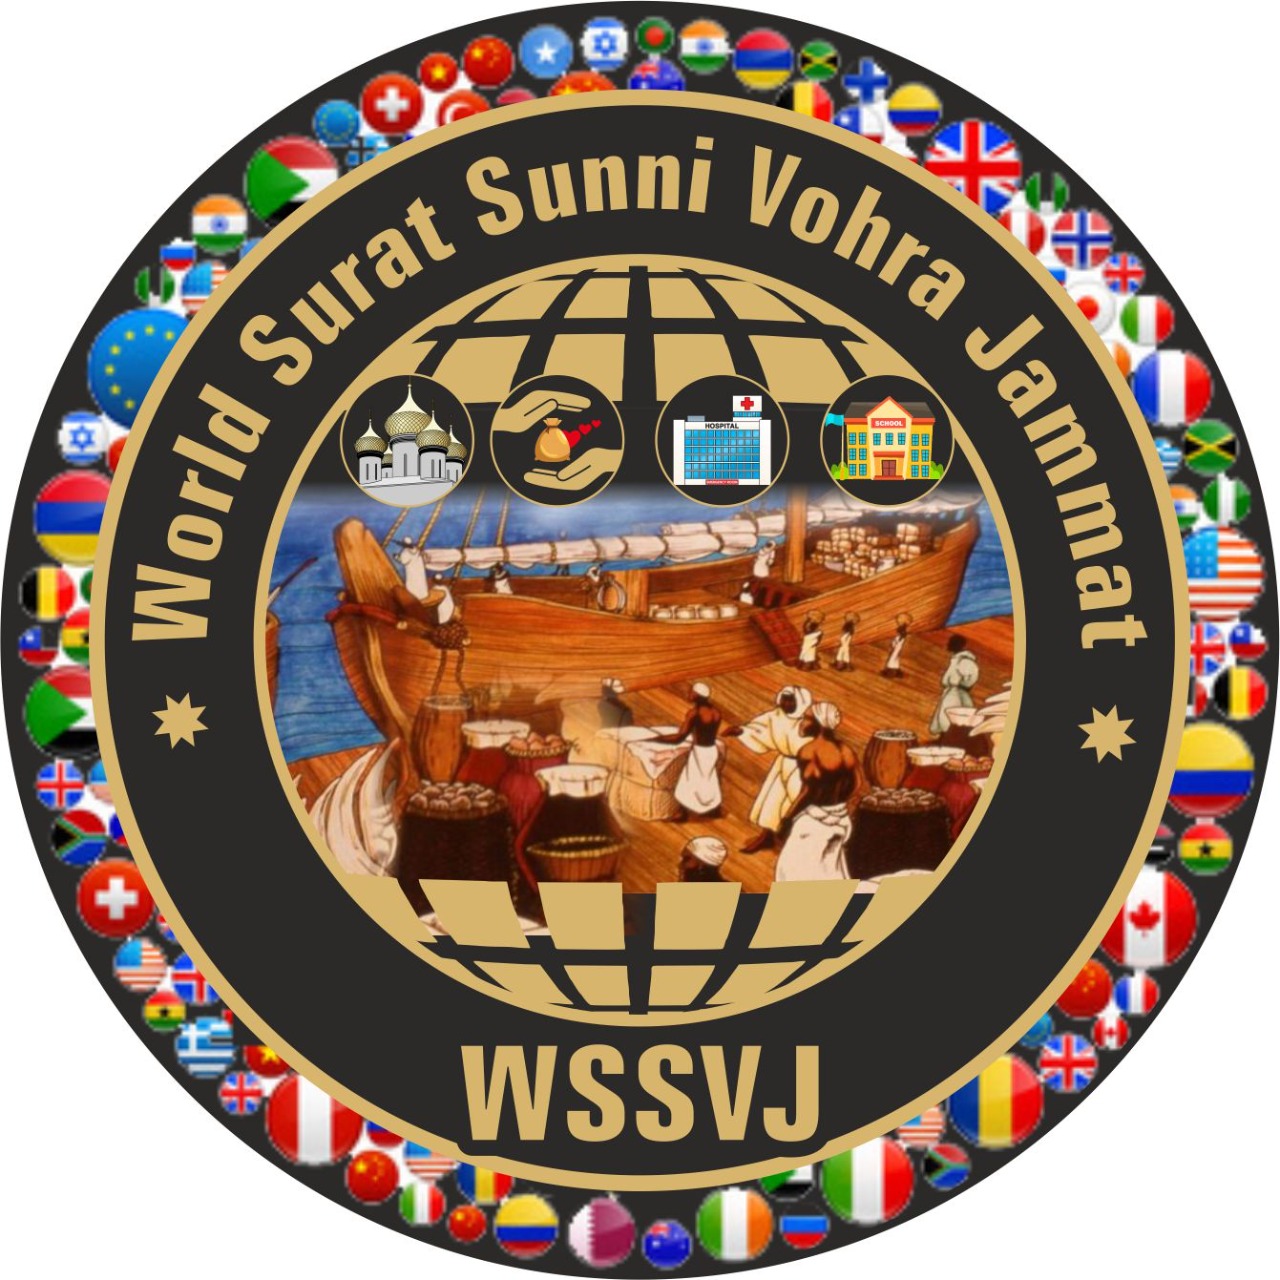 The Young Surti Sunni Vohra Muslim Welfare Society